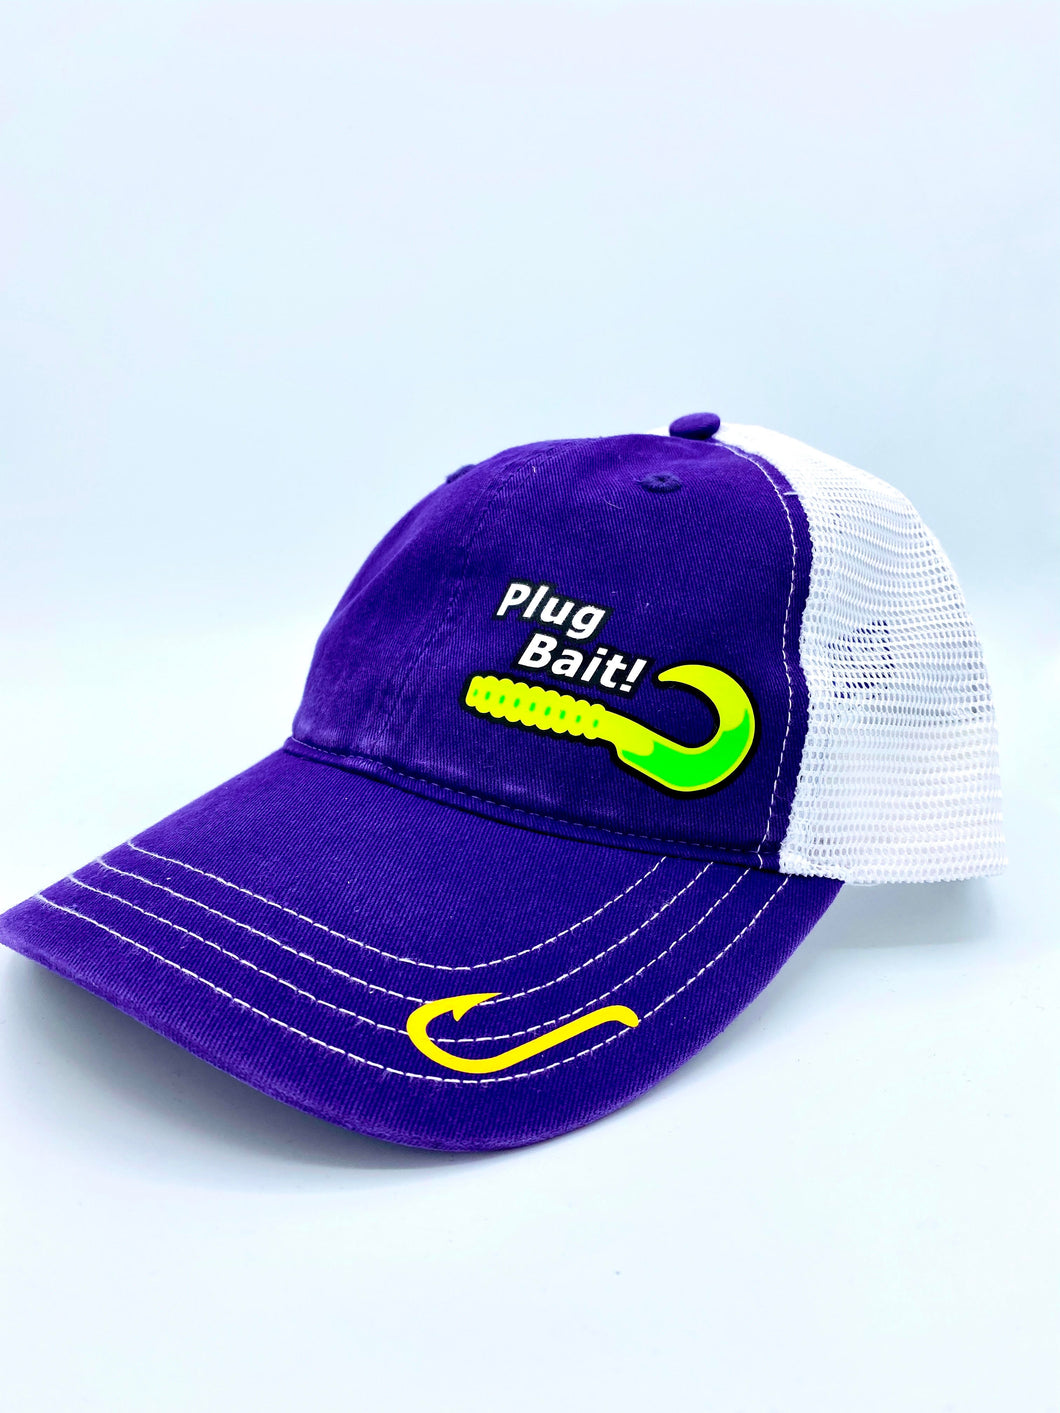 PlugBait Trucker Hat (Women's)